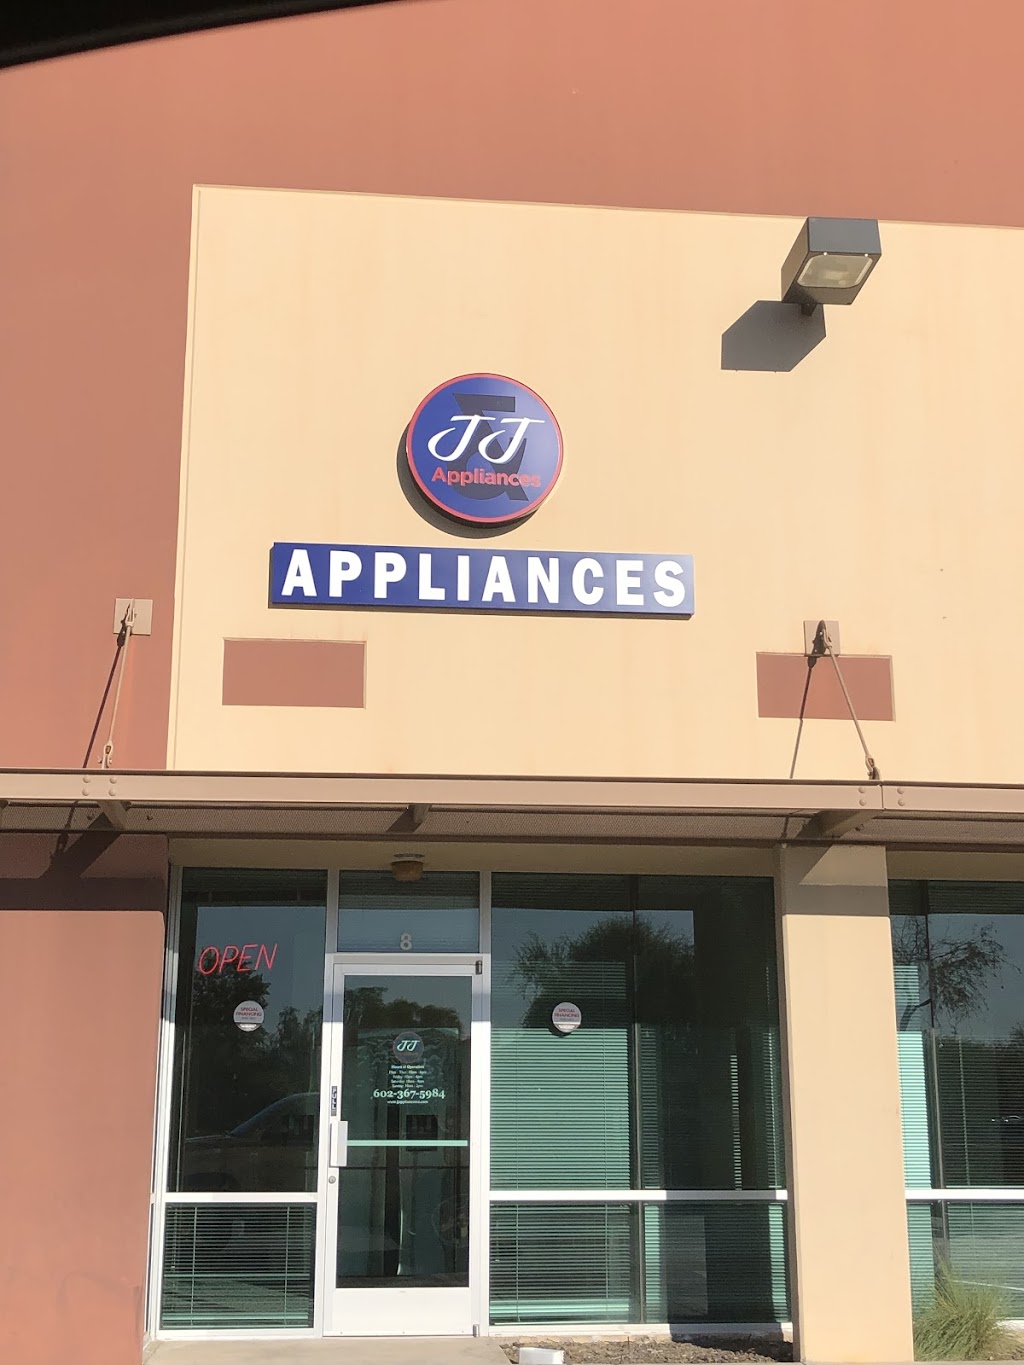 JJ Appliances | 407 S 107th Ave #8, Tolleson, AZ 85353 | Phone: (623) 217-2800